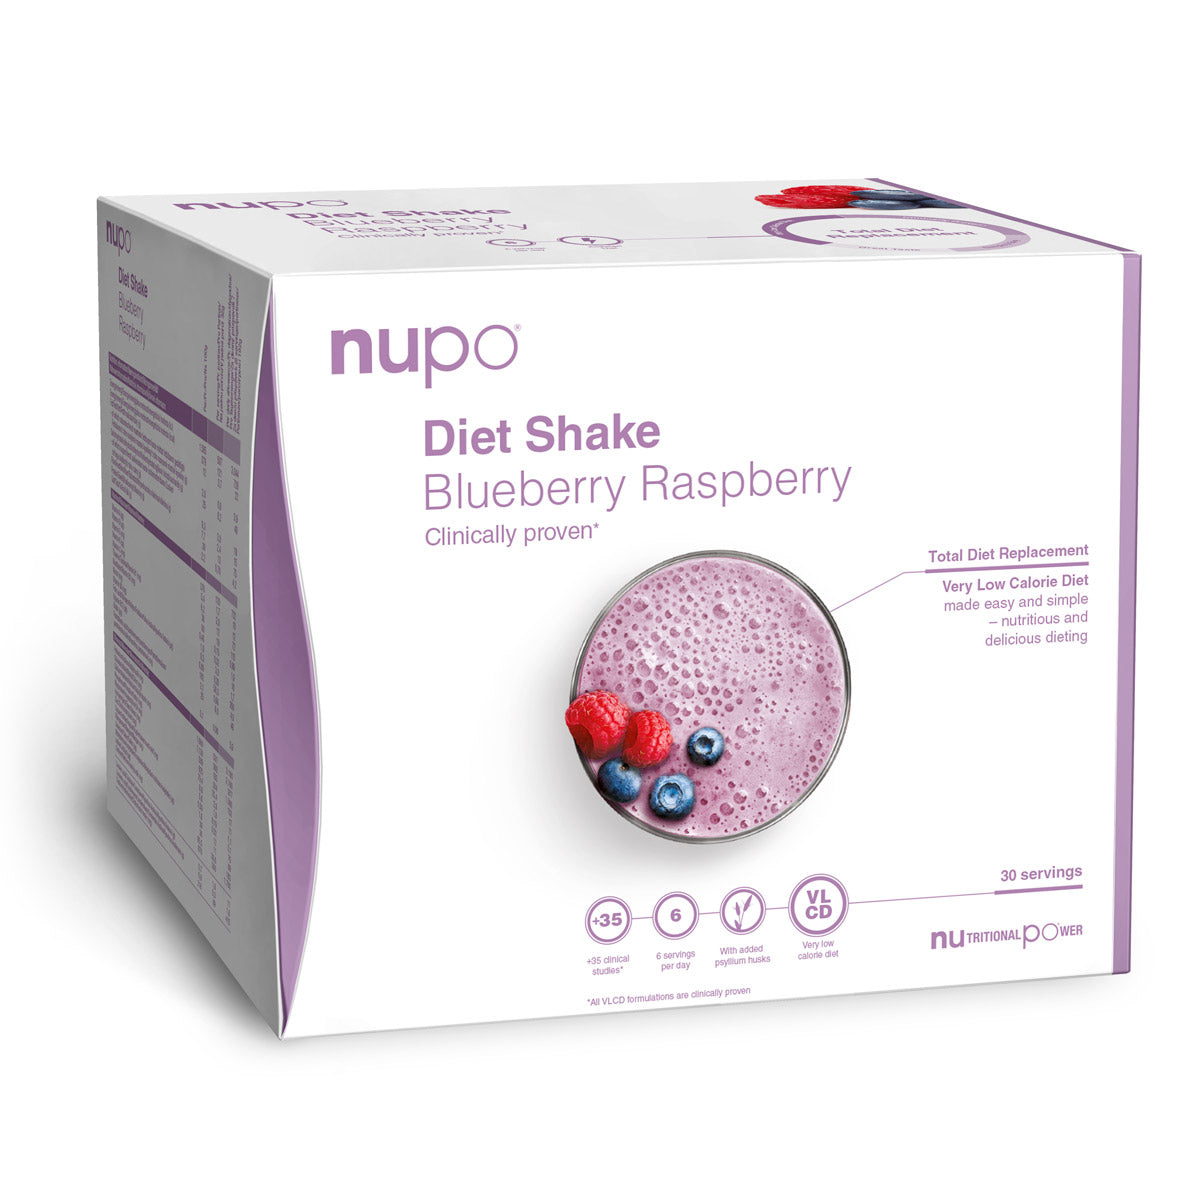 Brug Nupo Diet Shake Value Pack (960g) - Blueberry Raspberry til en forbedret oplevelse